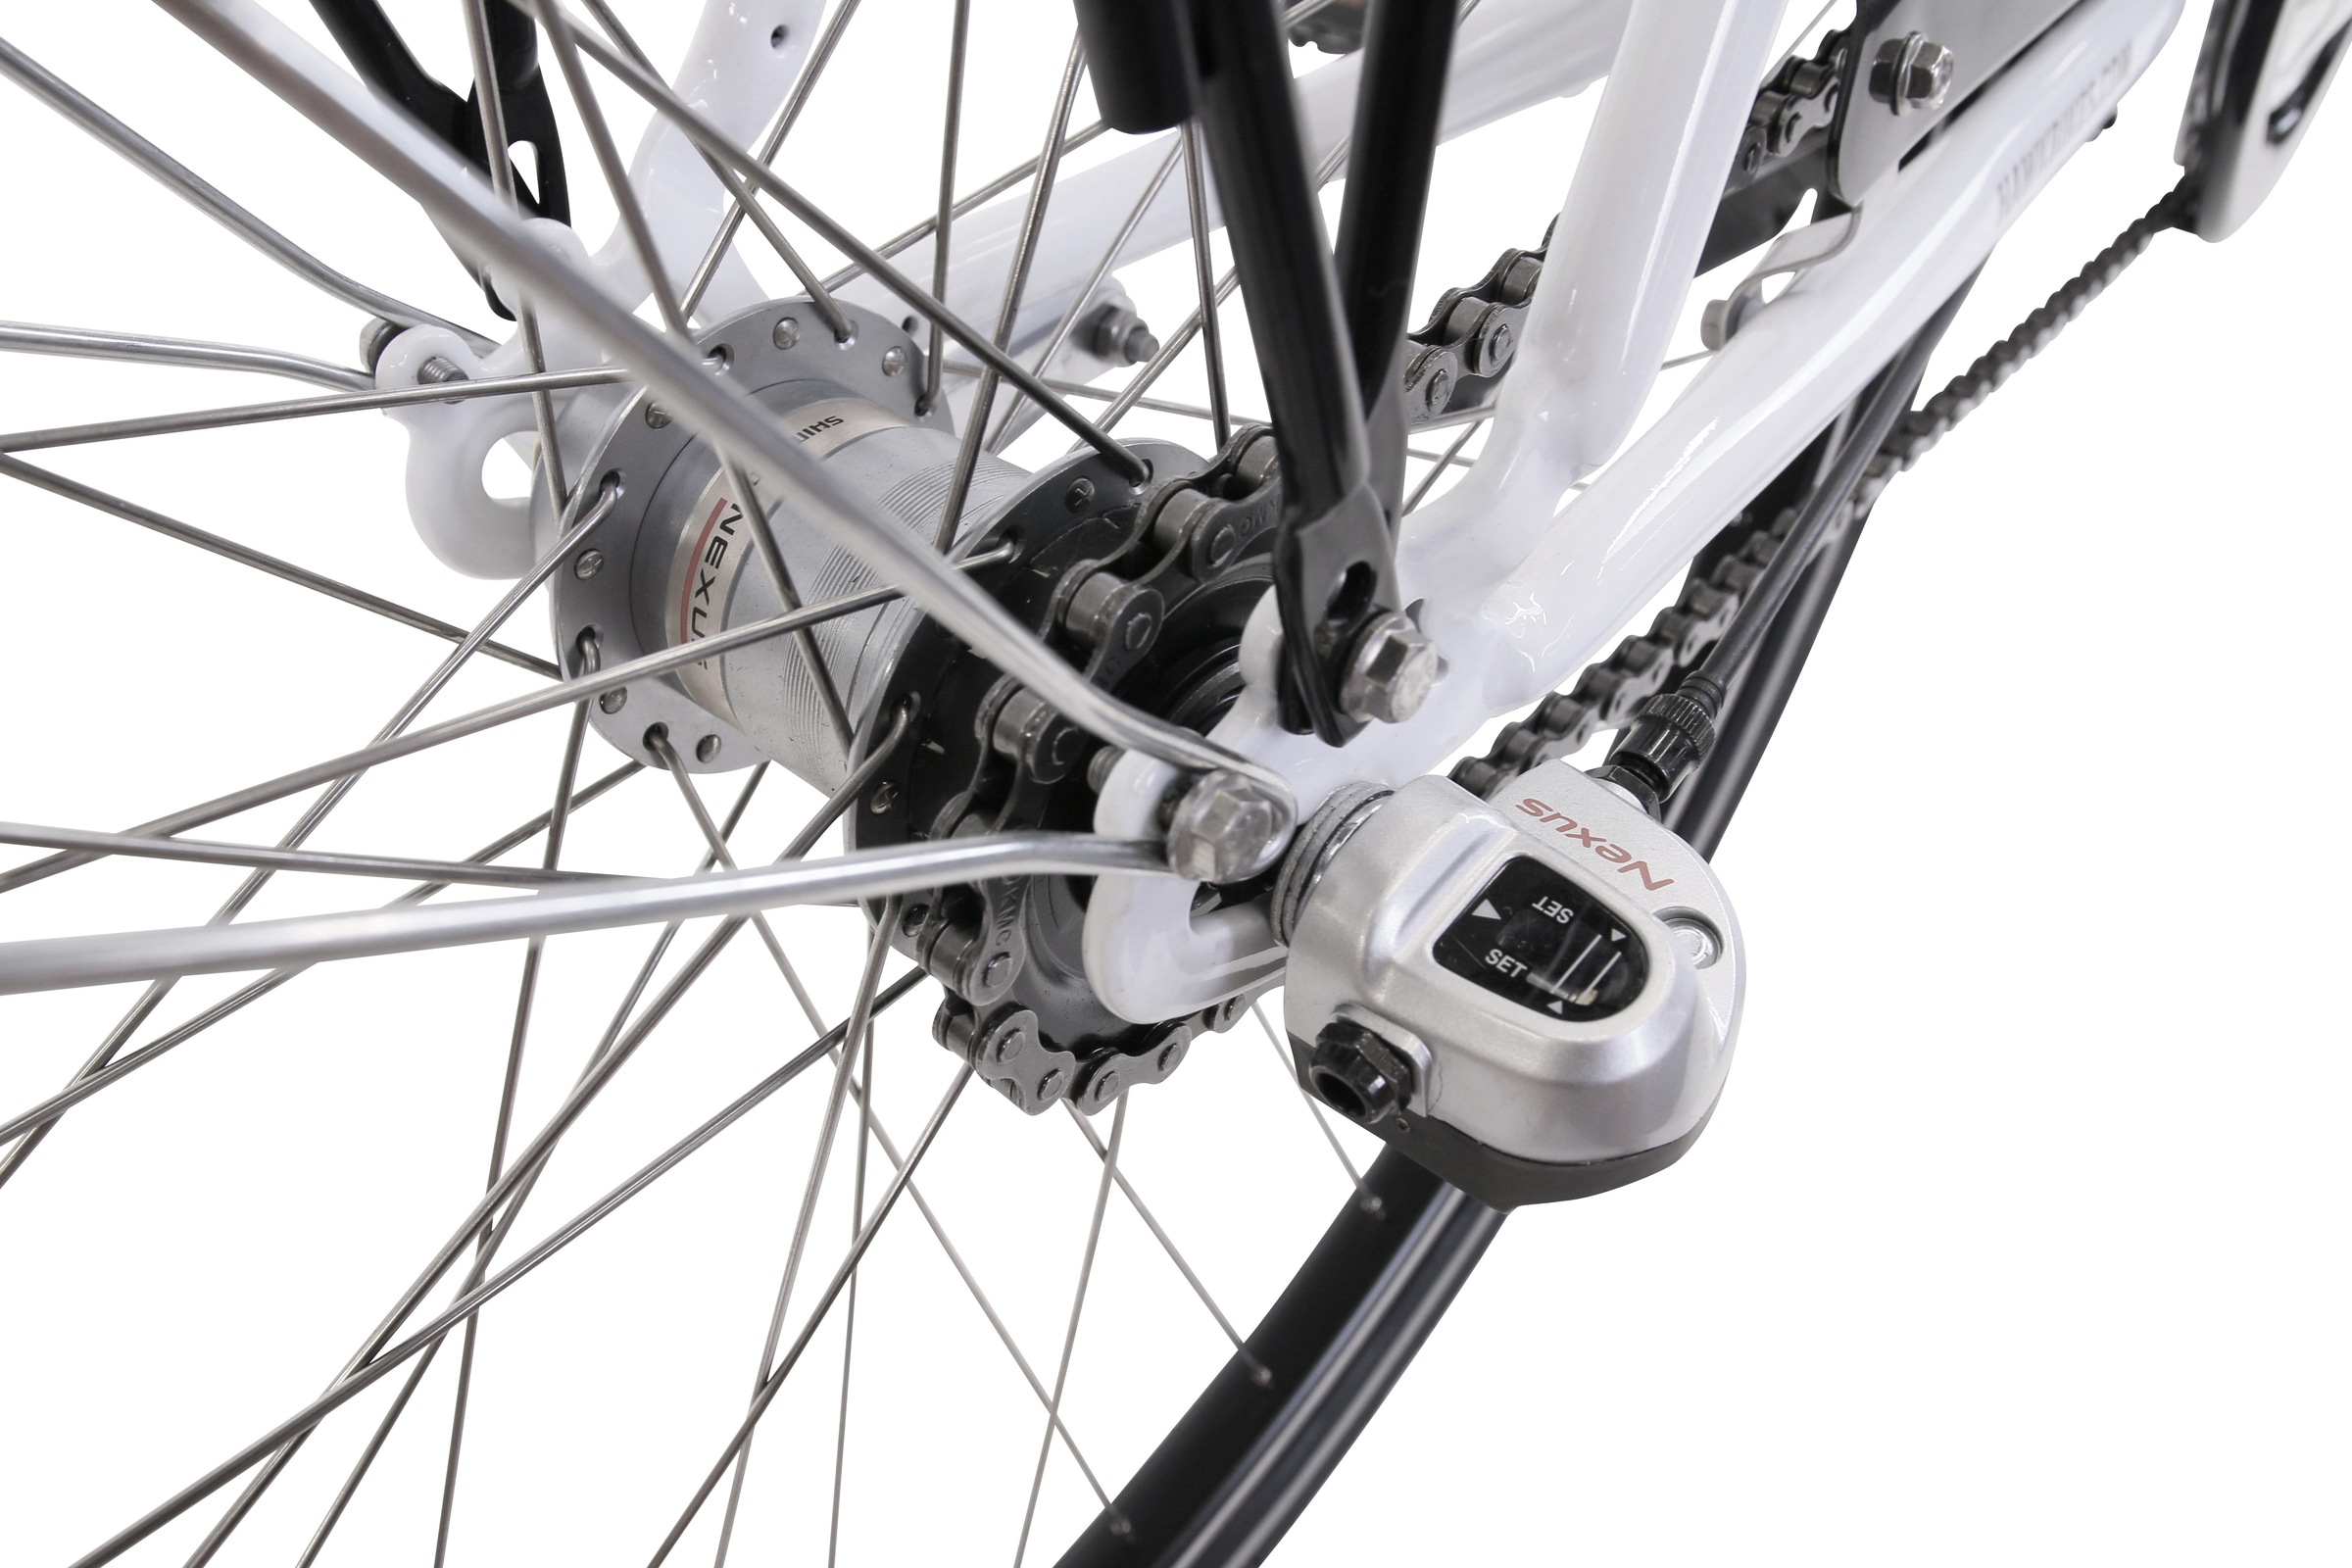 HAWK Bikes Cityrad »HAWK City Wave Premium White«, 3 Gang, Shimano, Nexus Schaltwerk, für Damen und Herren